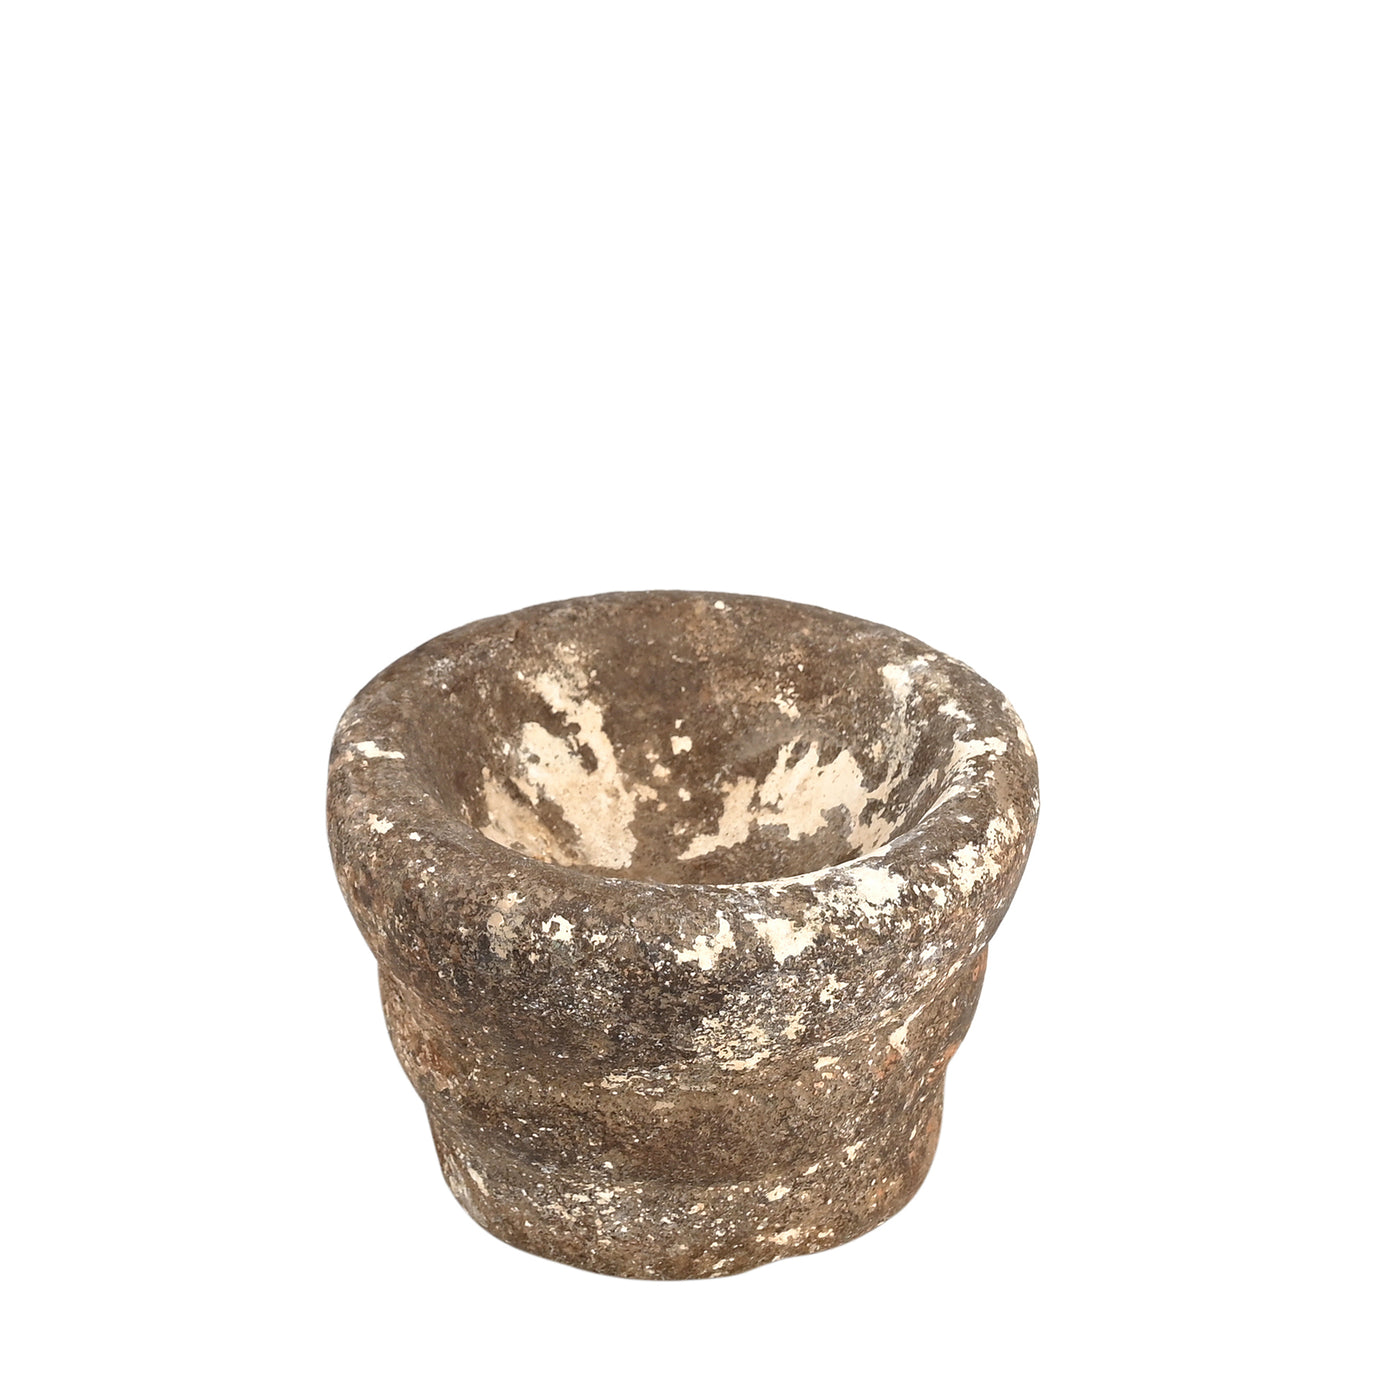 Devliya - Stone bowl n ° 8